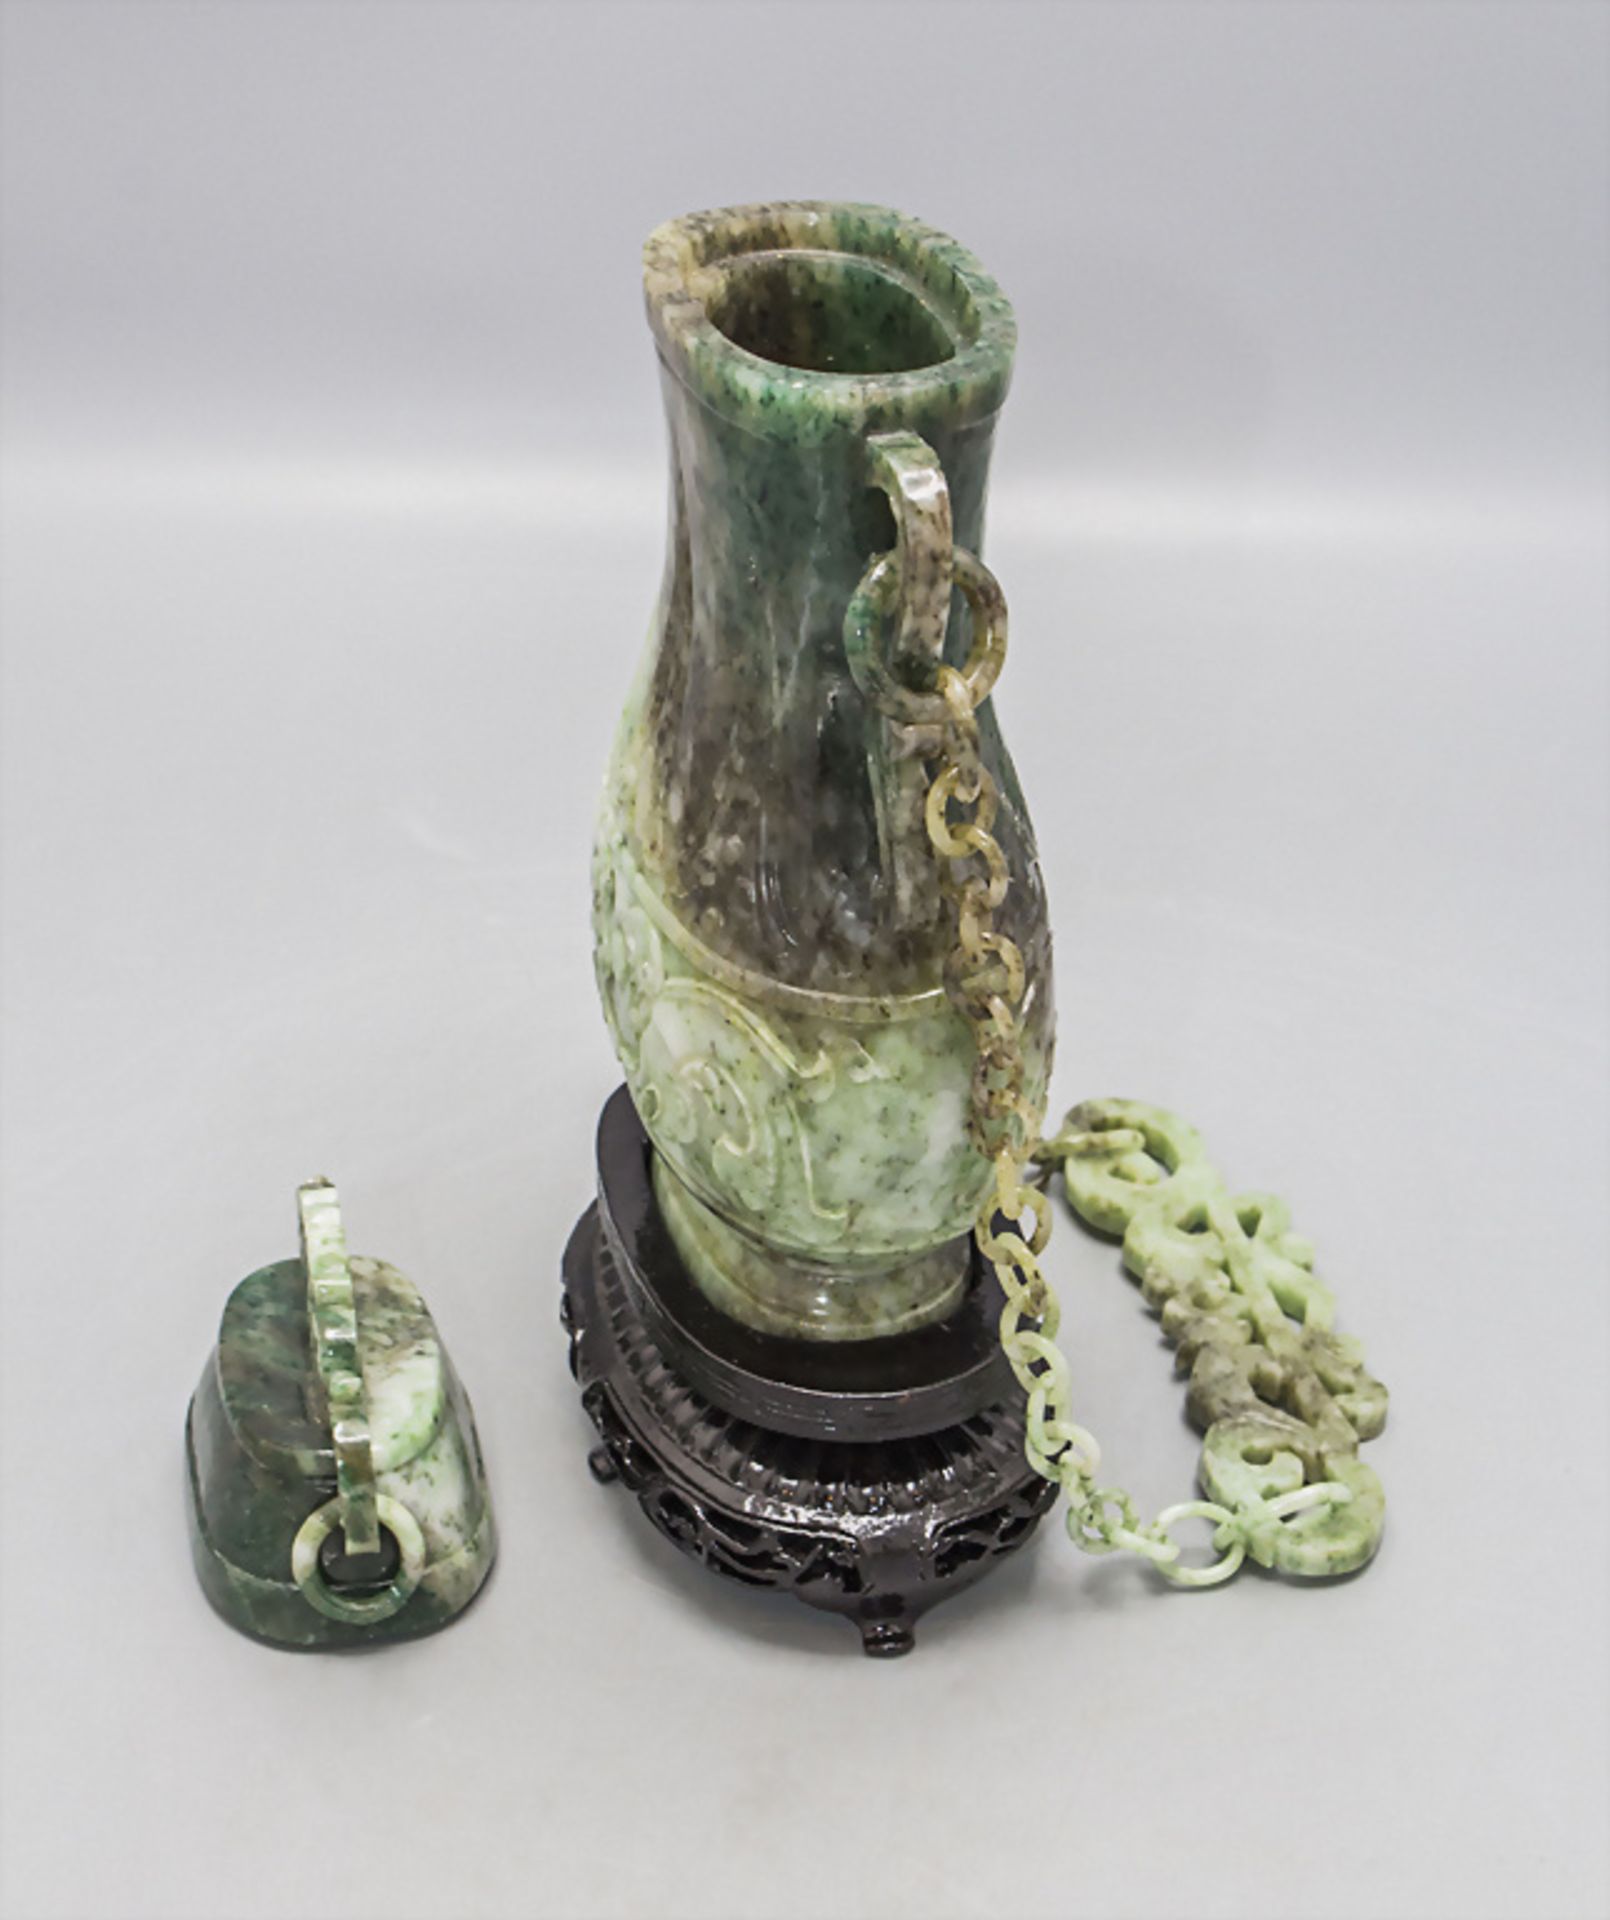 Feine Jade-Deckelvase an Hängekette / A fine jade lidded vase on a chain, China, um 1920 - Image 4 of 10